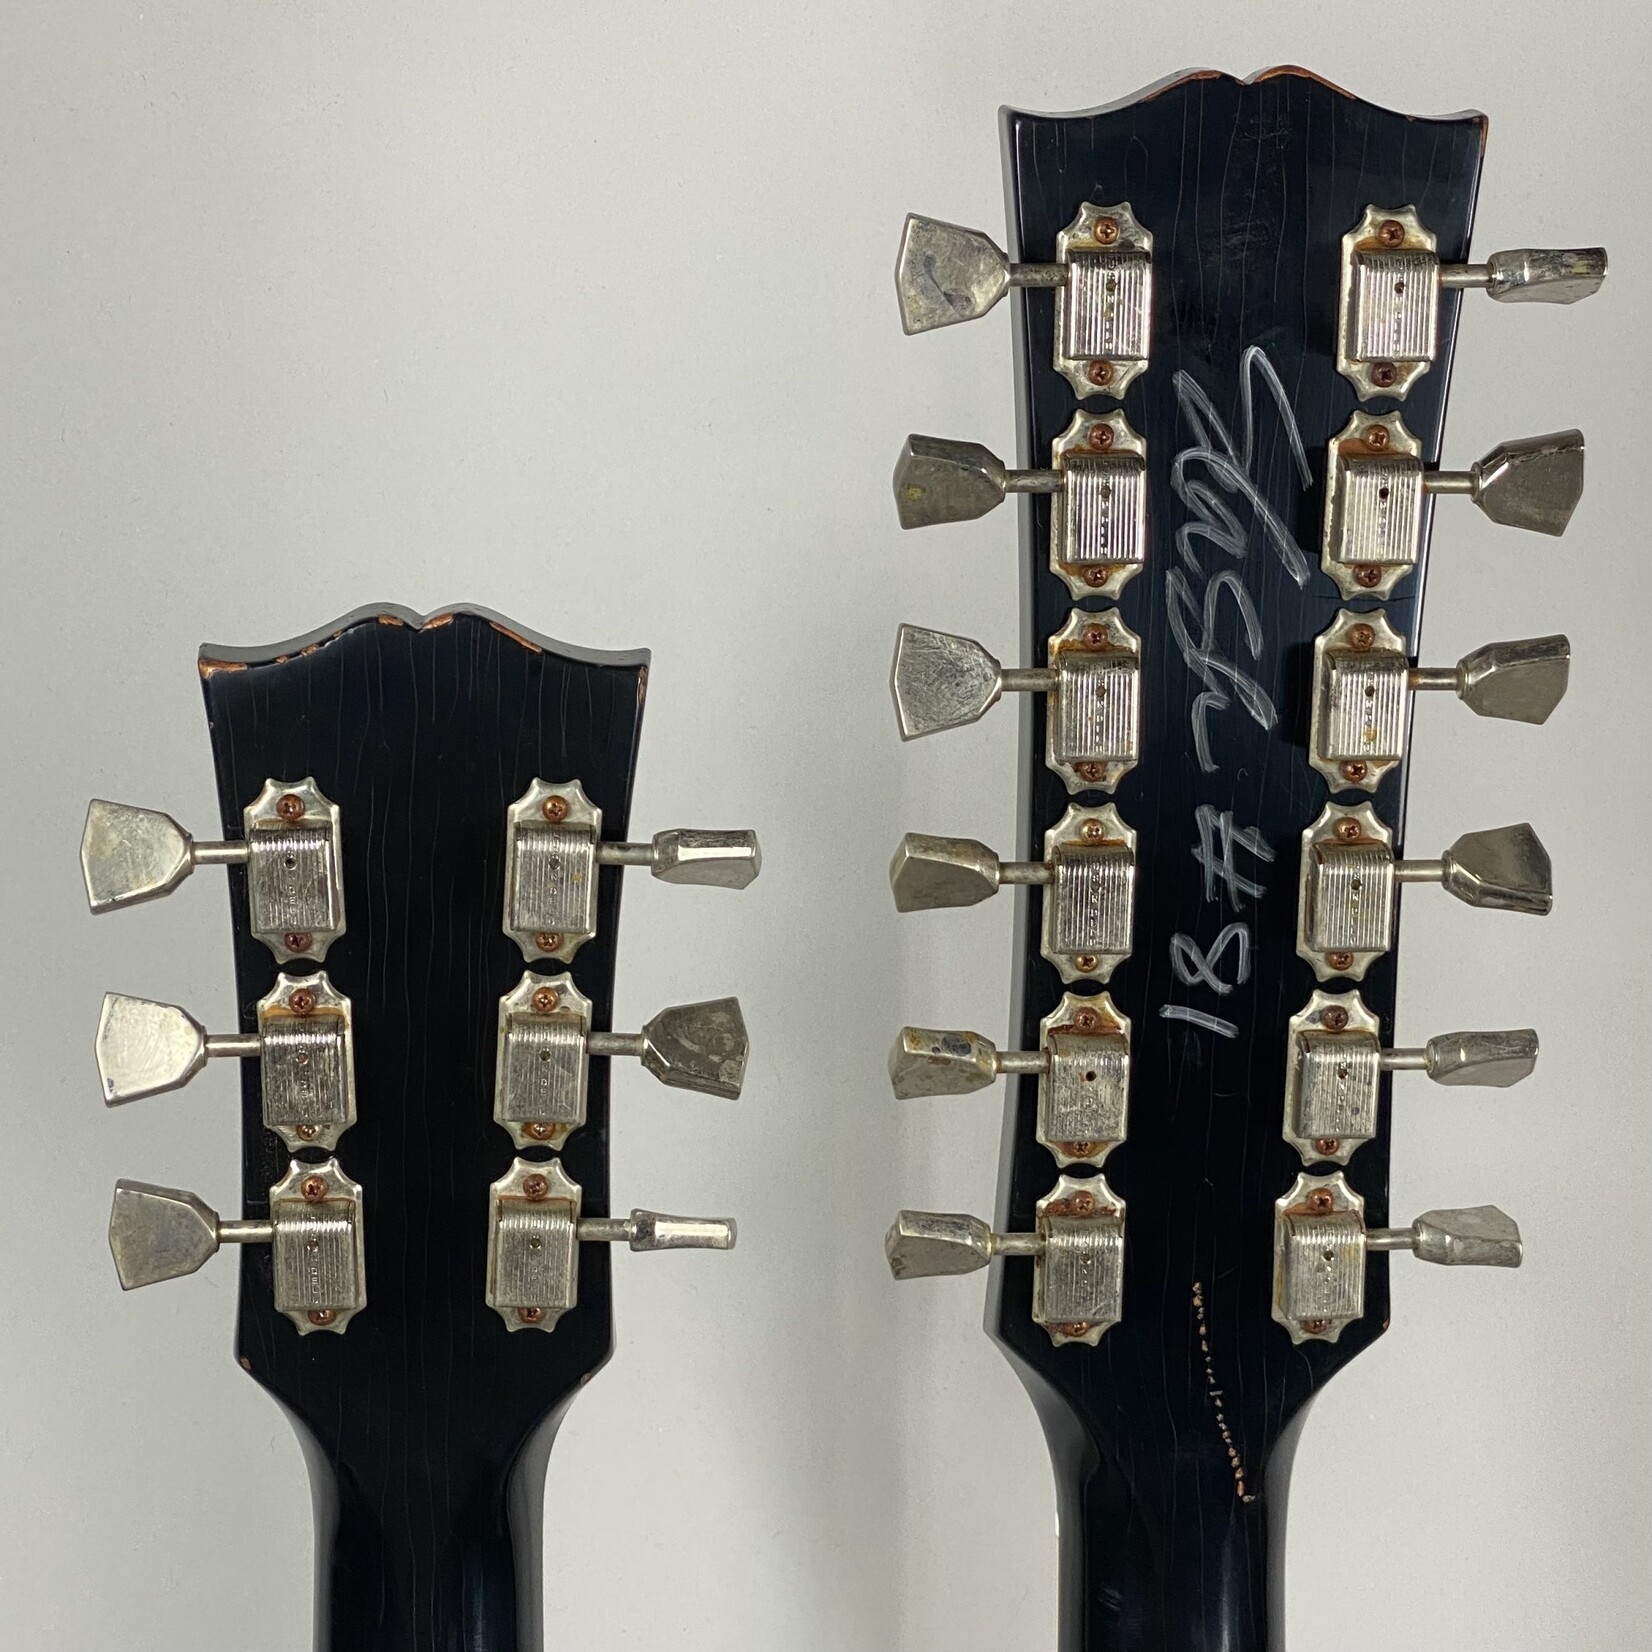 Gibson 2019 Gibson Slash '66 EDS-1275 Aged Signed Doubleneck